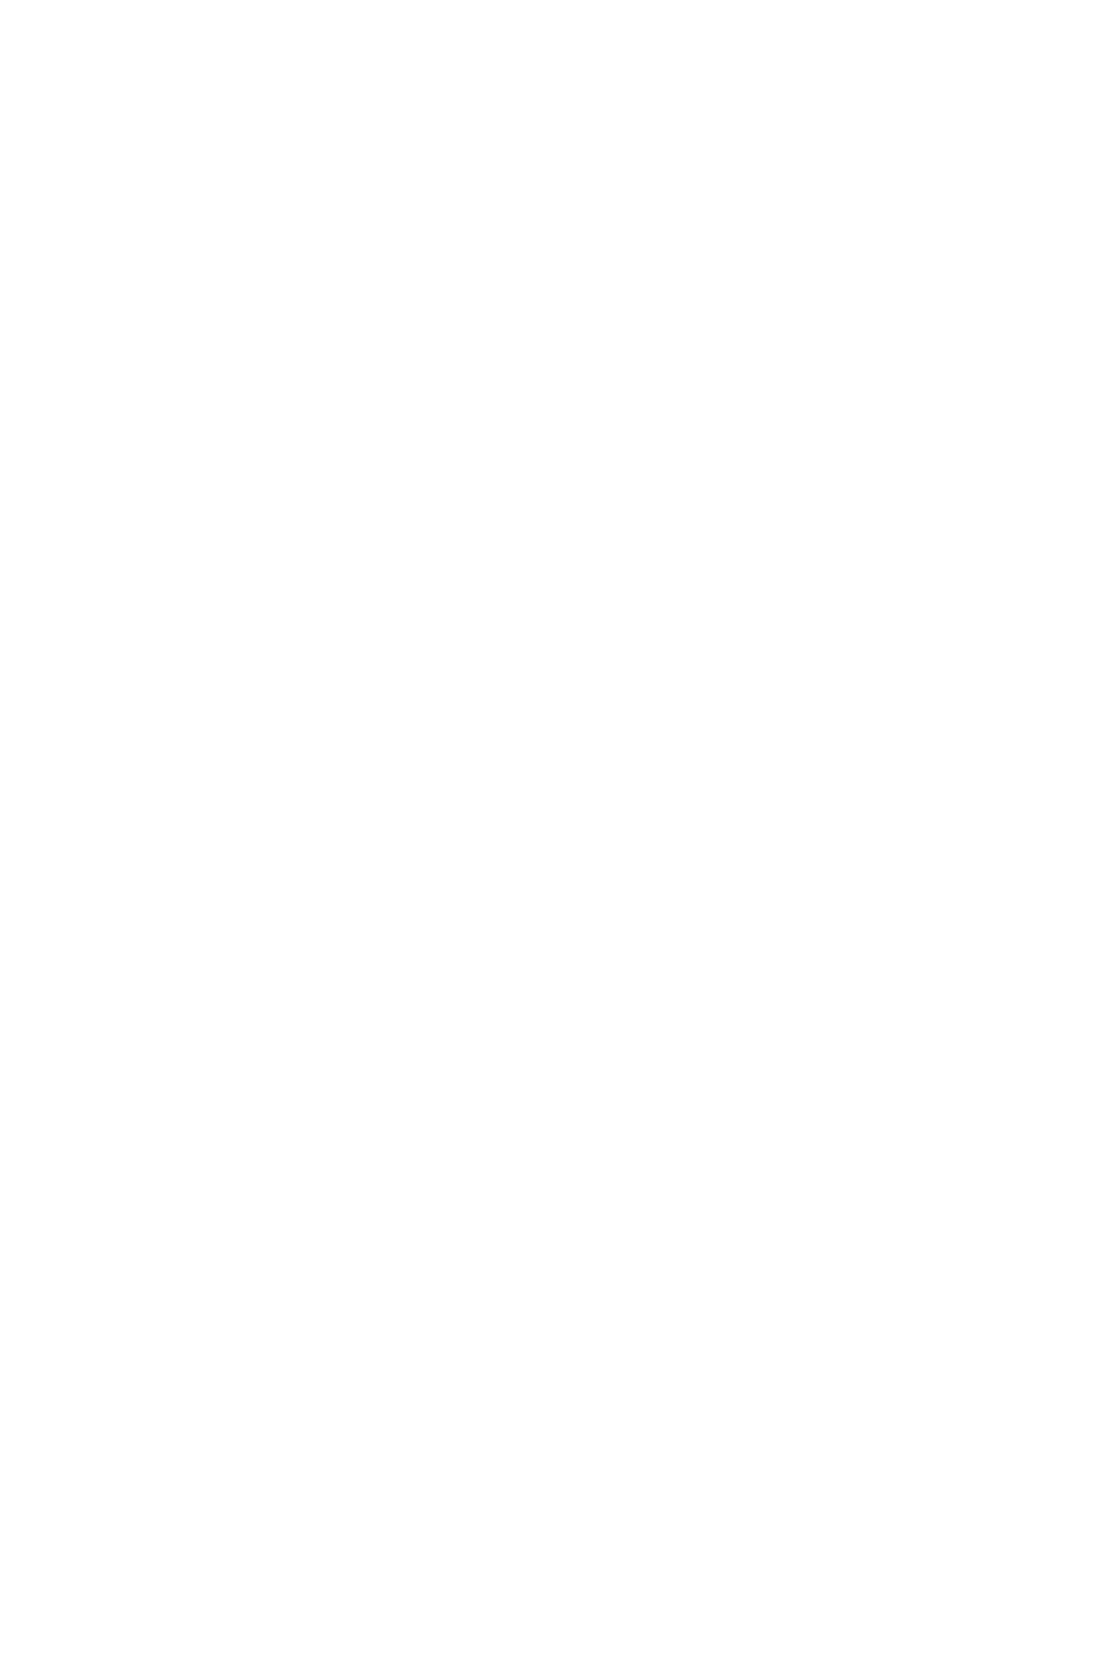 Шуба цвета кэмел с воротником апаш из искусственного меха большого размера на заказ в ателье с доставкой по России, в Казахстан и Беларусь